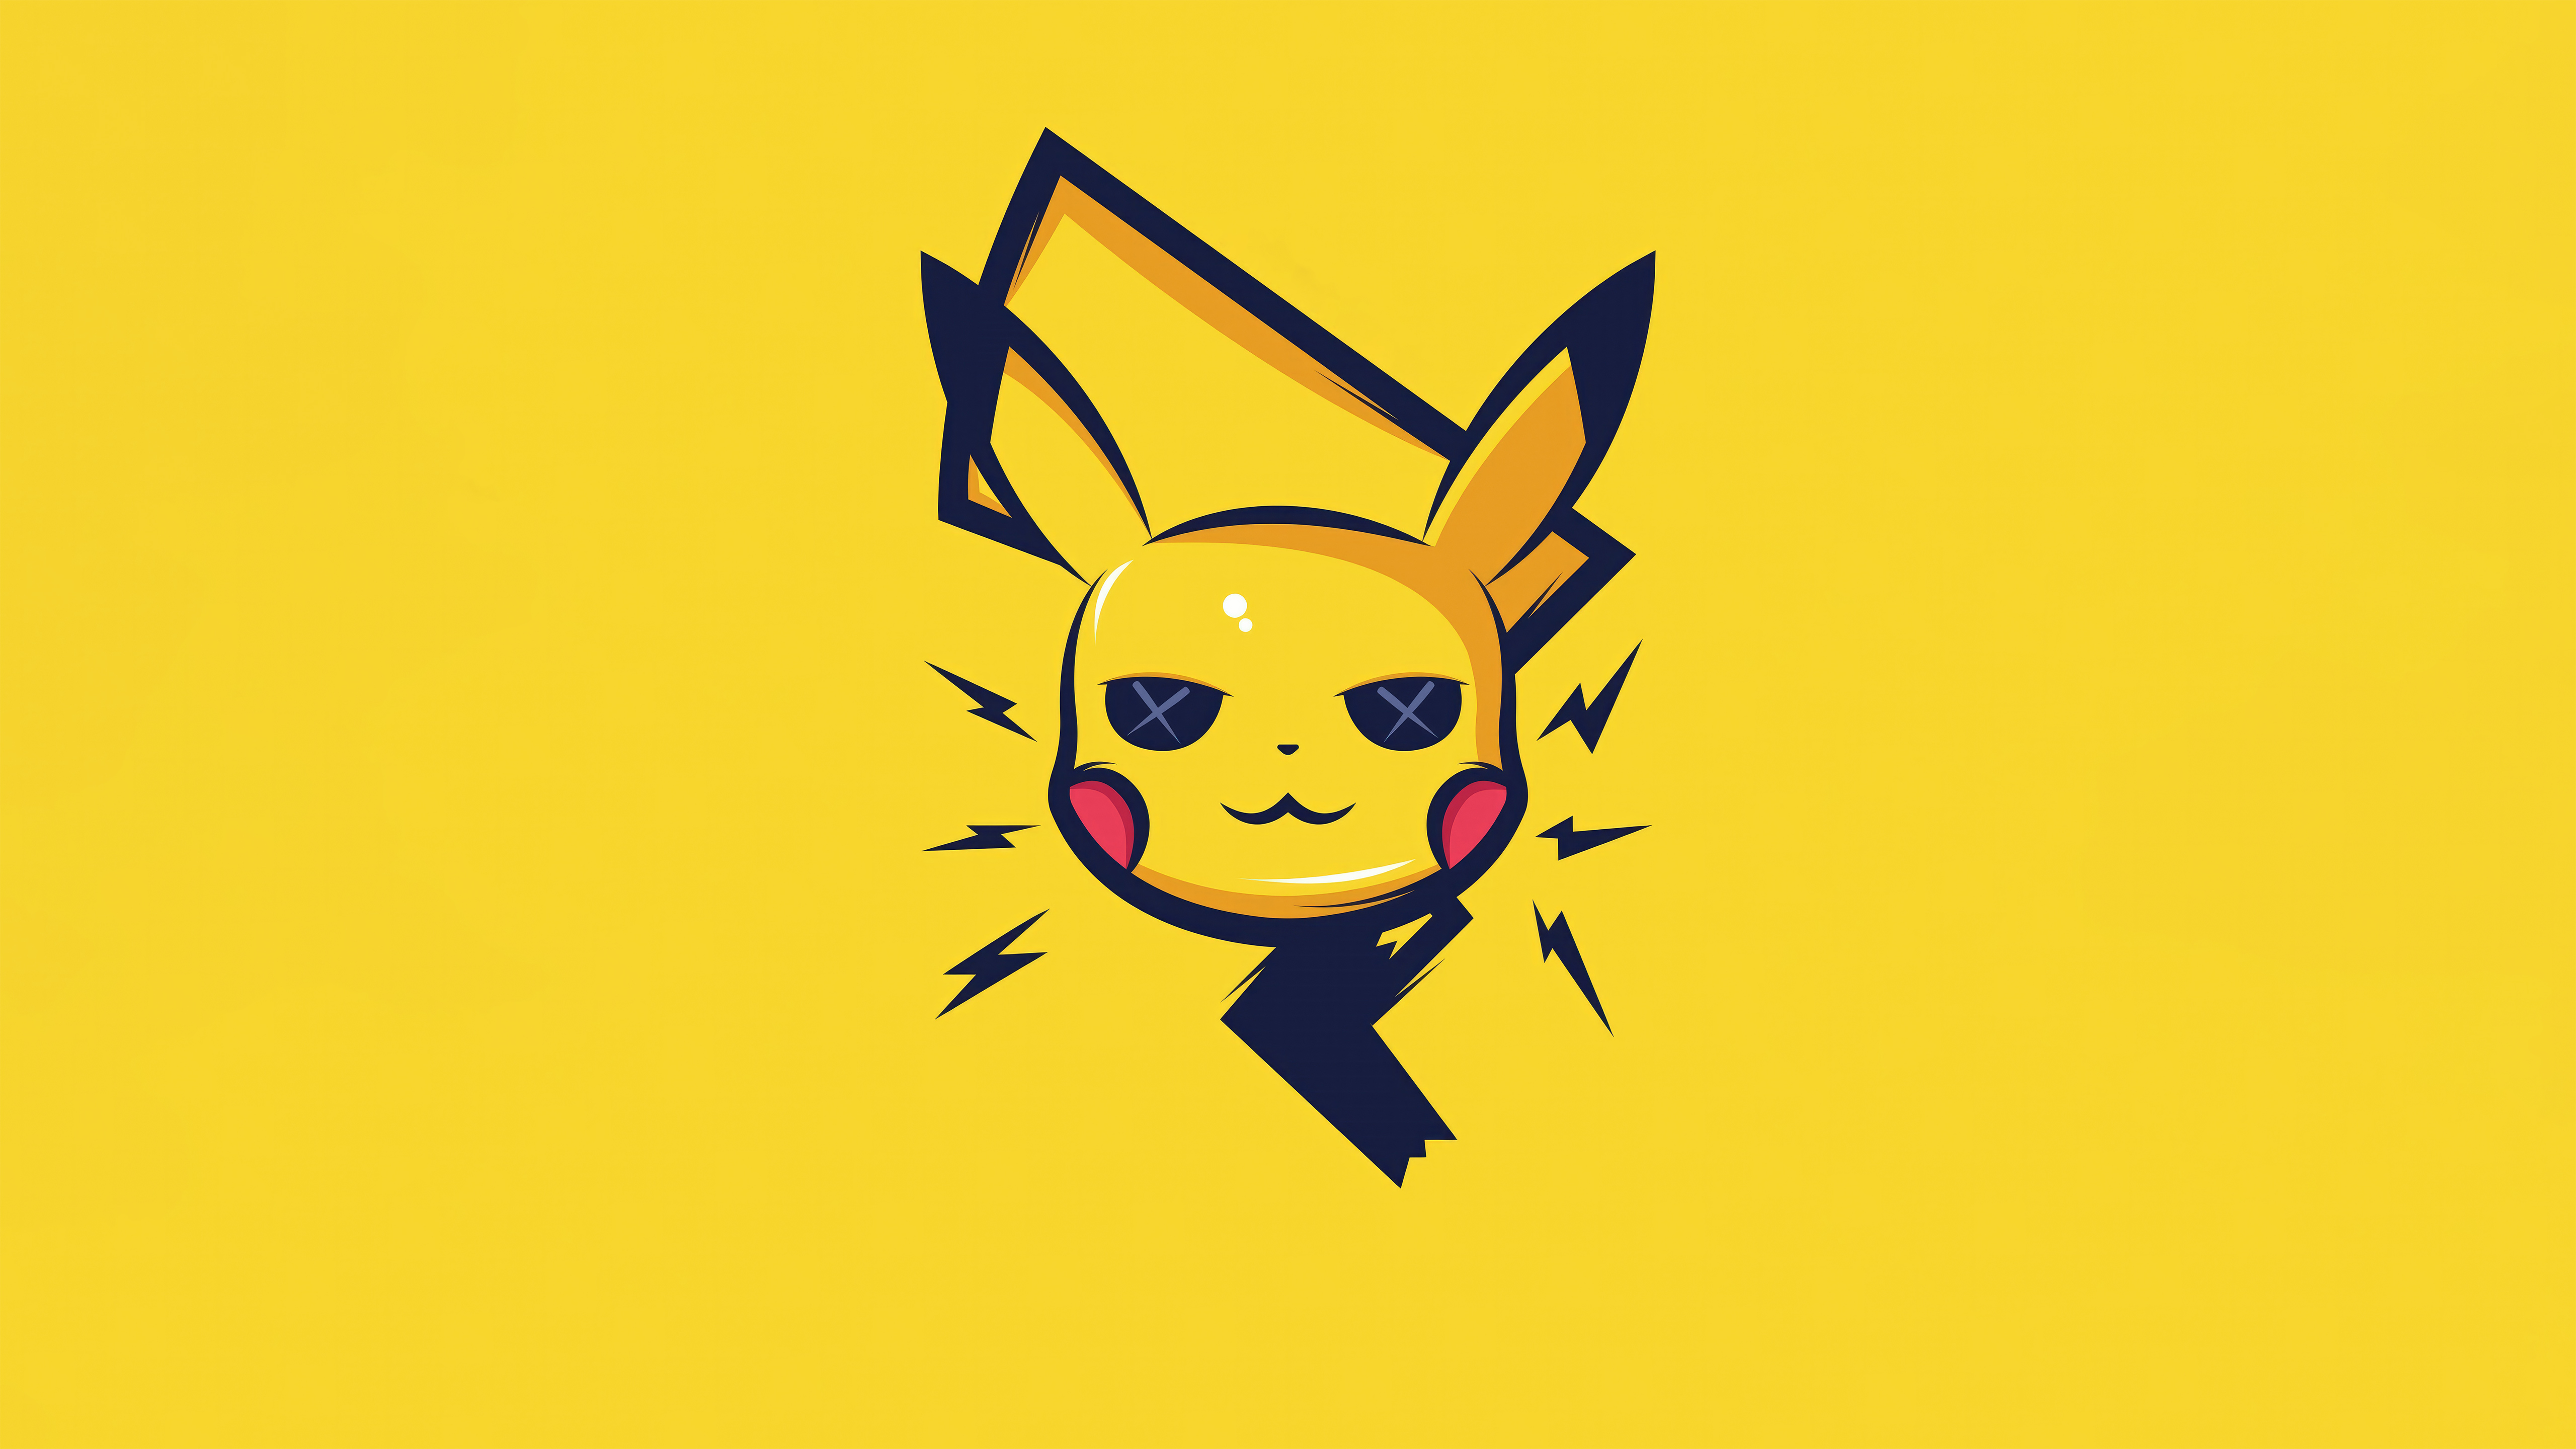 dibujos pikachu - Buscar con Google  Pikachu, Pokemon characters, Pokemon